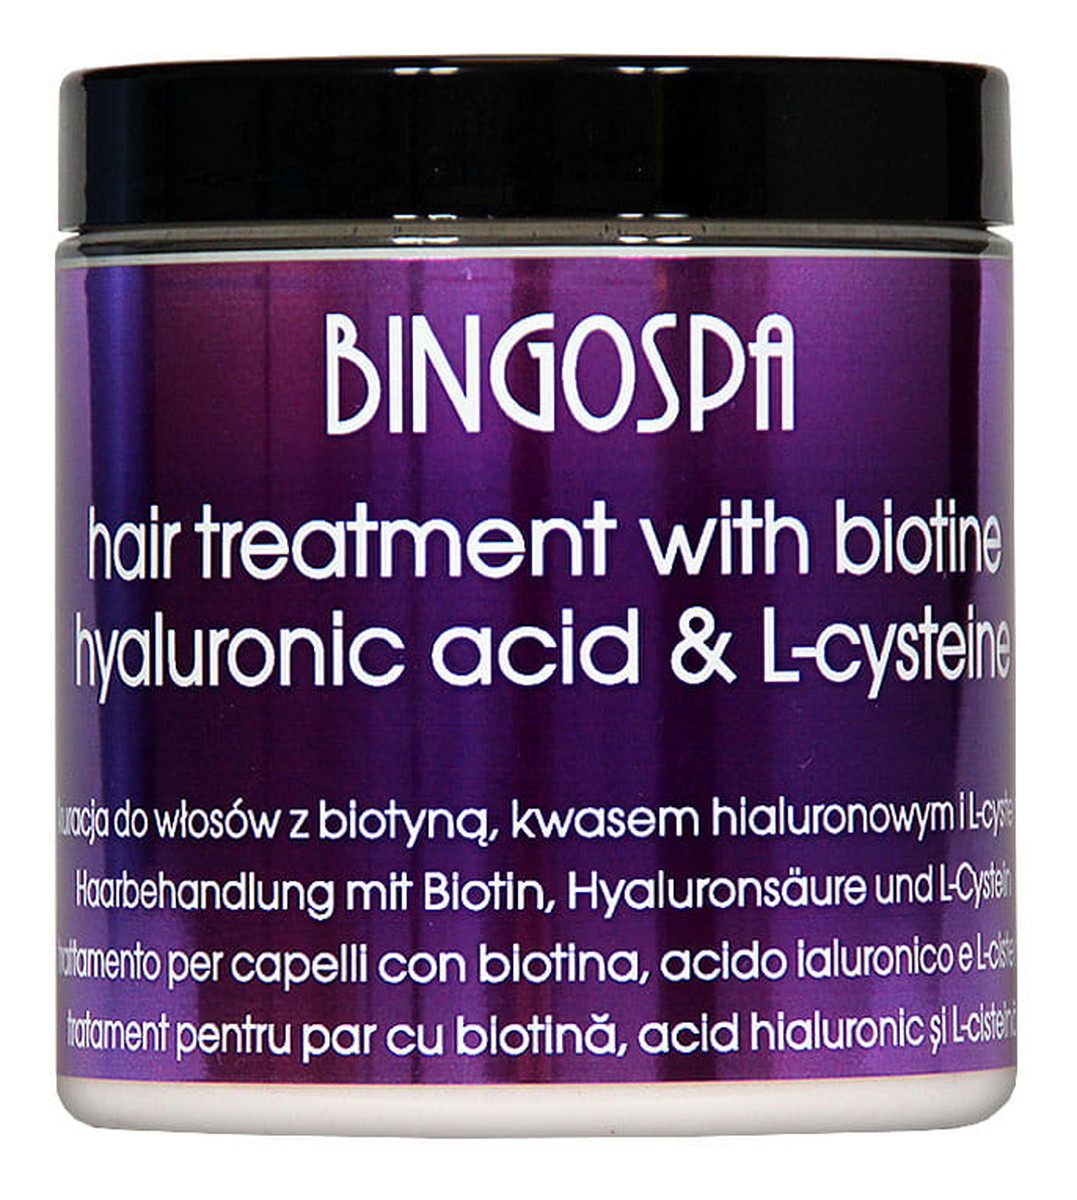 Kuracja do włosów z biotyną, kwasem hialuronowym i L-cysteiną